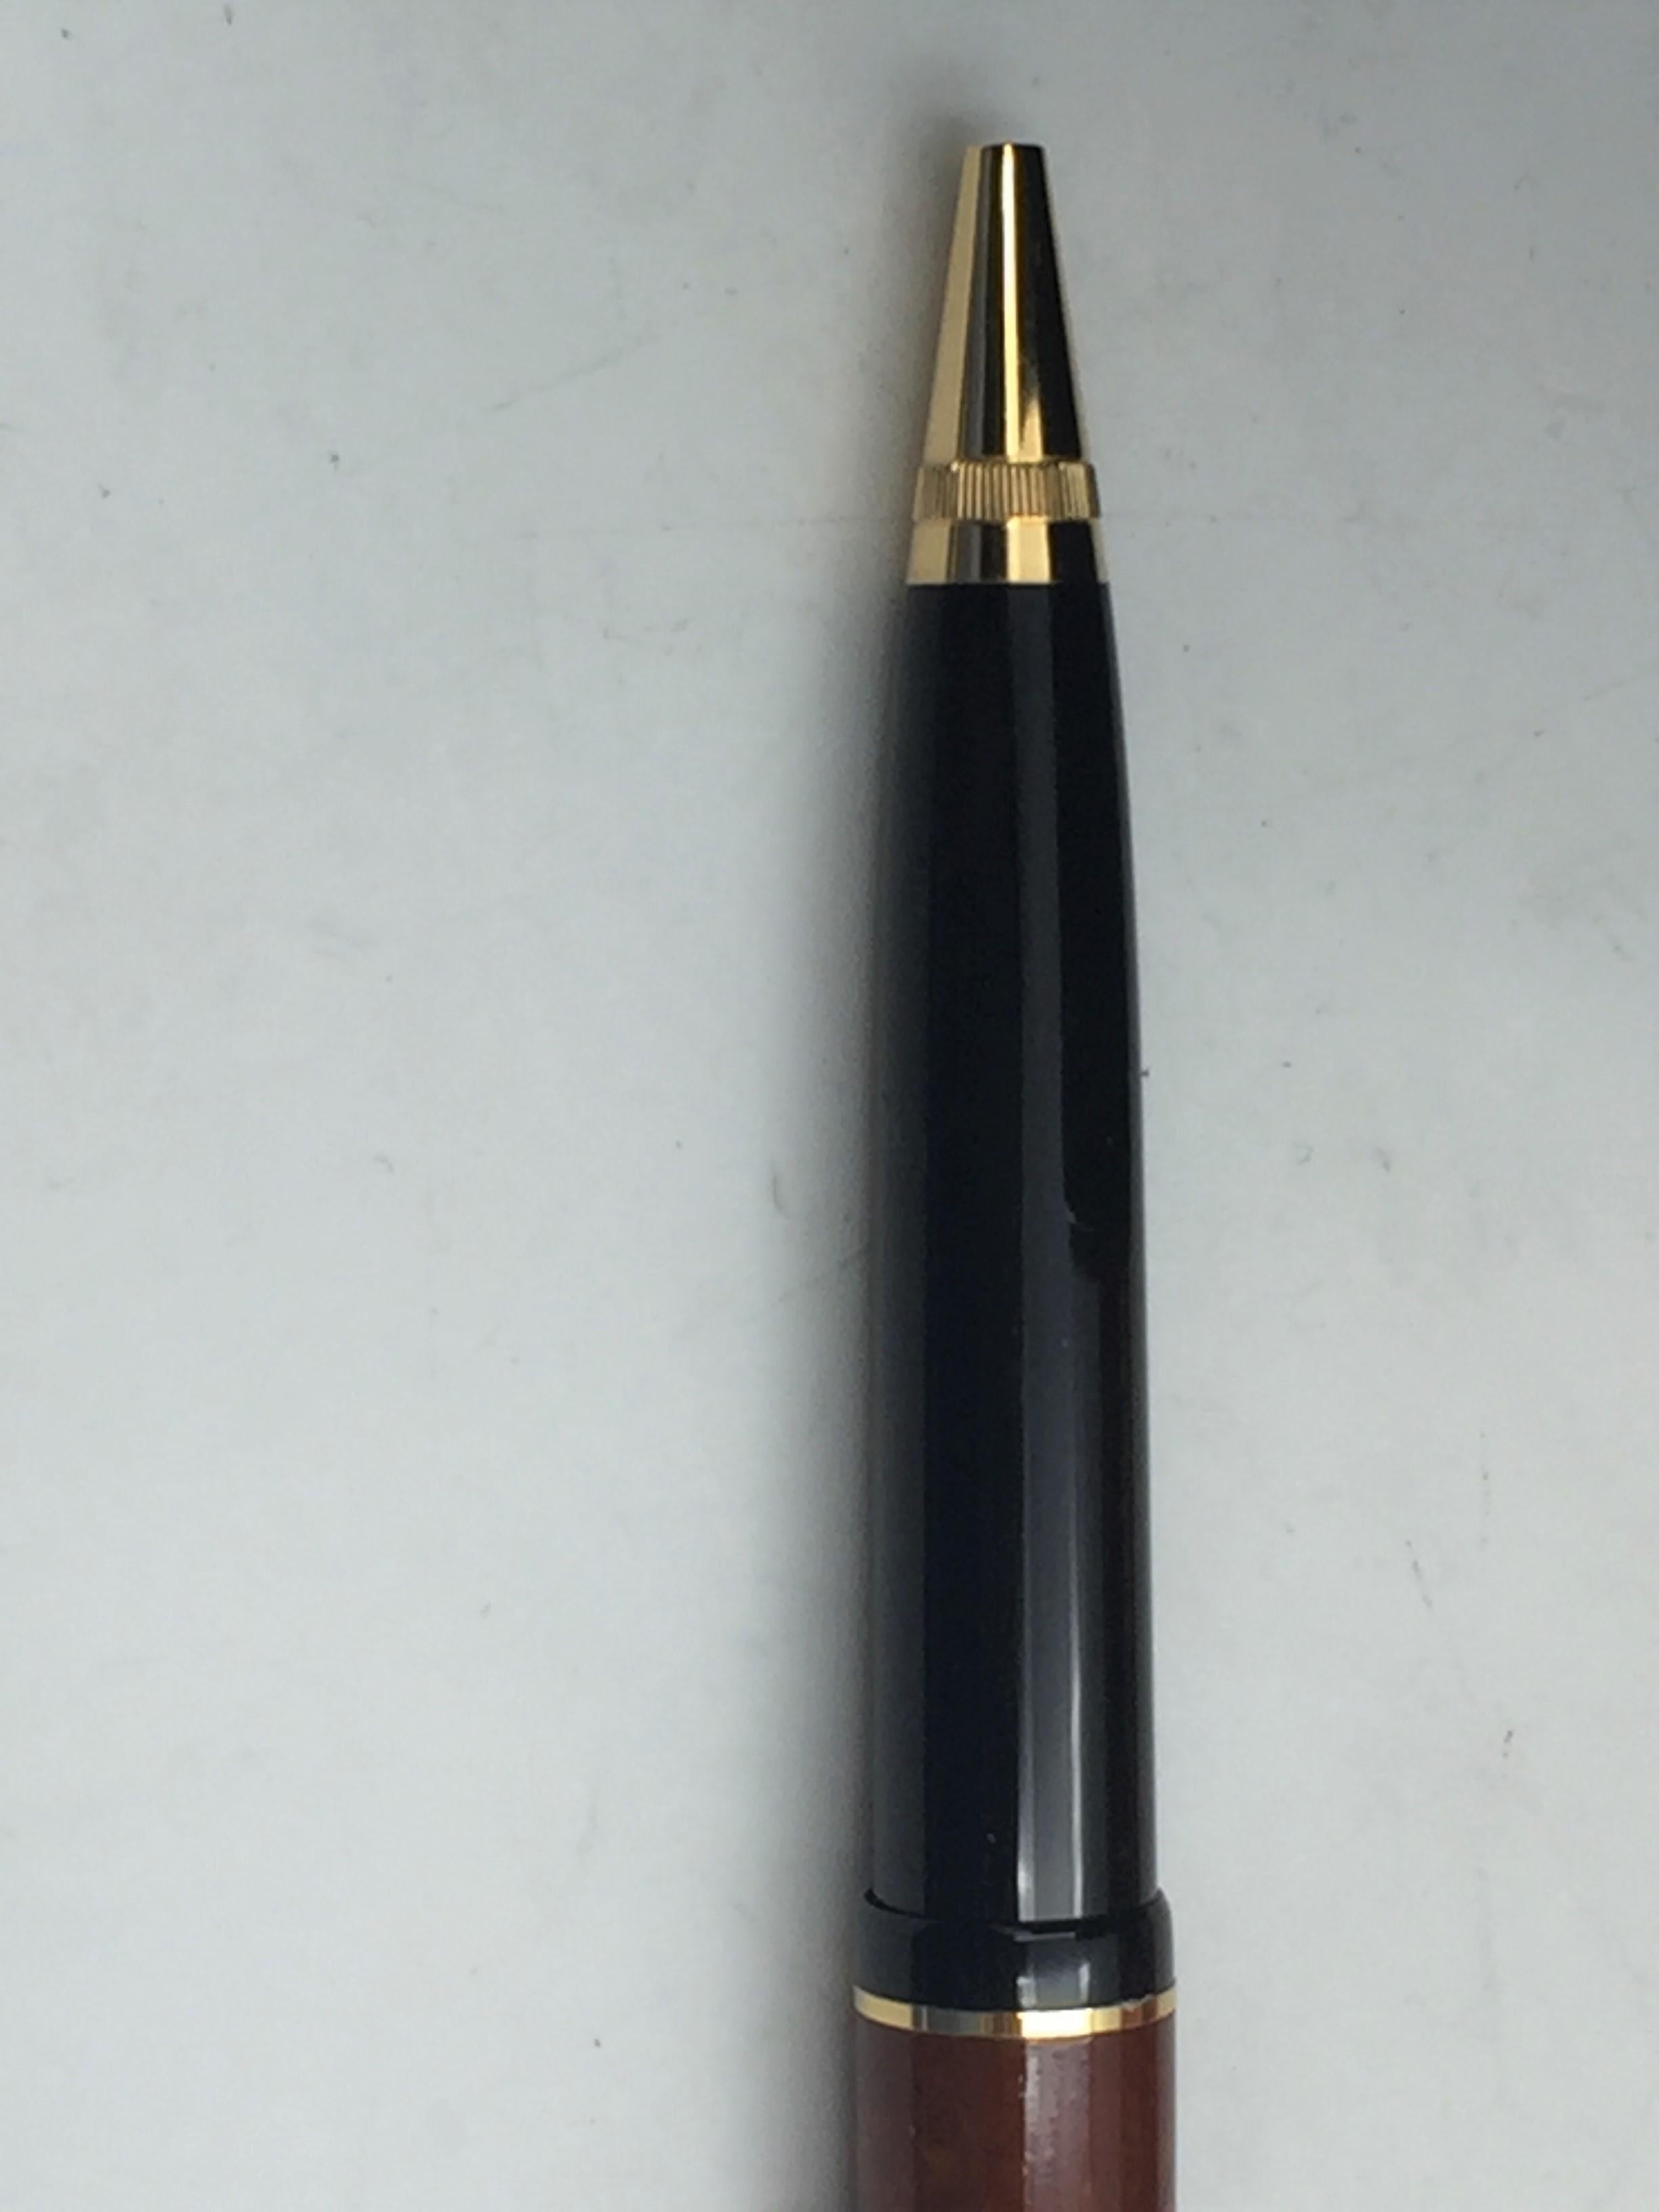 montblanc pen sales